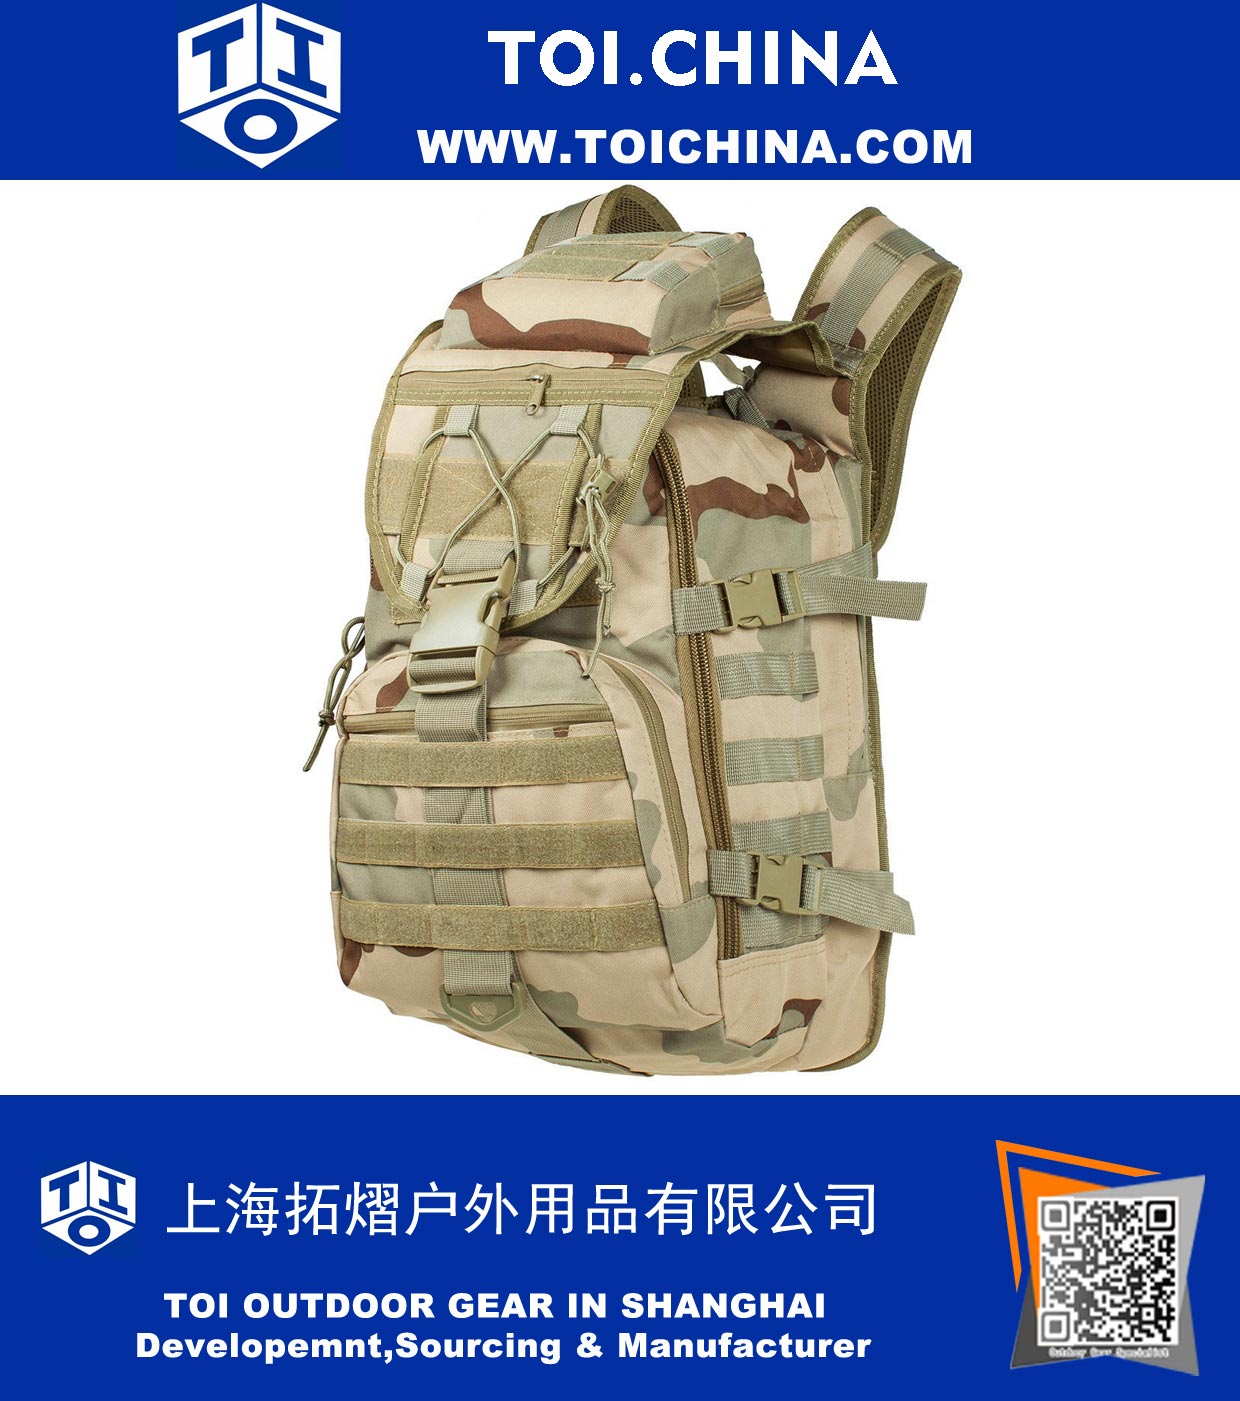 40L Mochila táctica militar de asalto bolsa de viaje al aire libre caza que acampan bolsas impermeables Molle Sistema Mochila